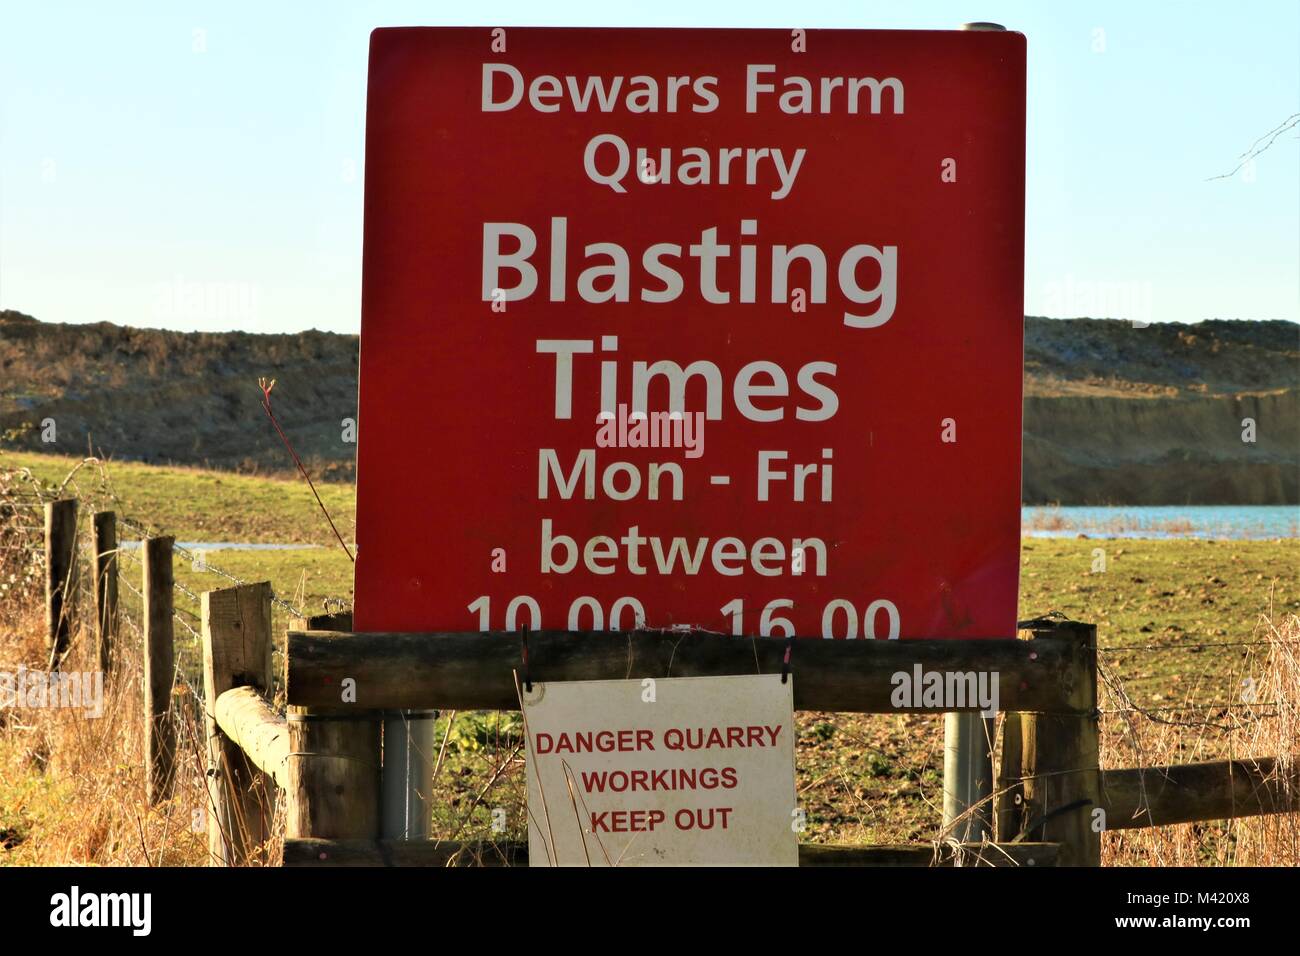 Carrière ferme Dewars Blasting fois signe, Oxfordshire, UK Banque D'Images